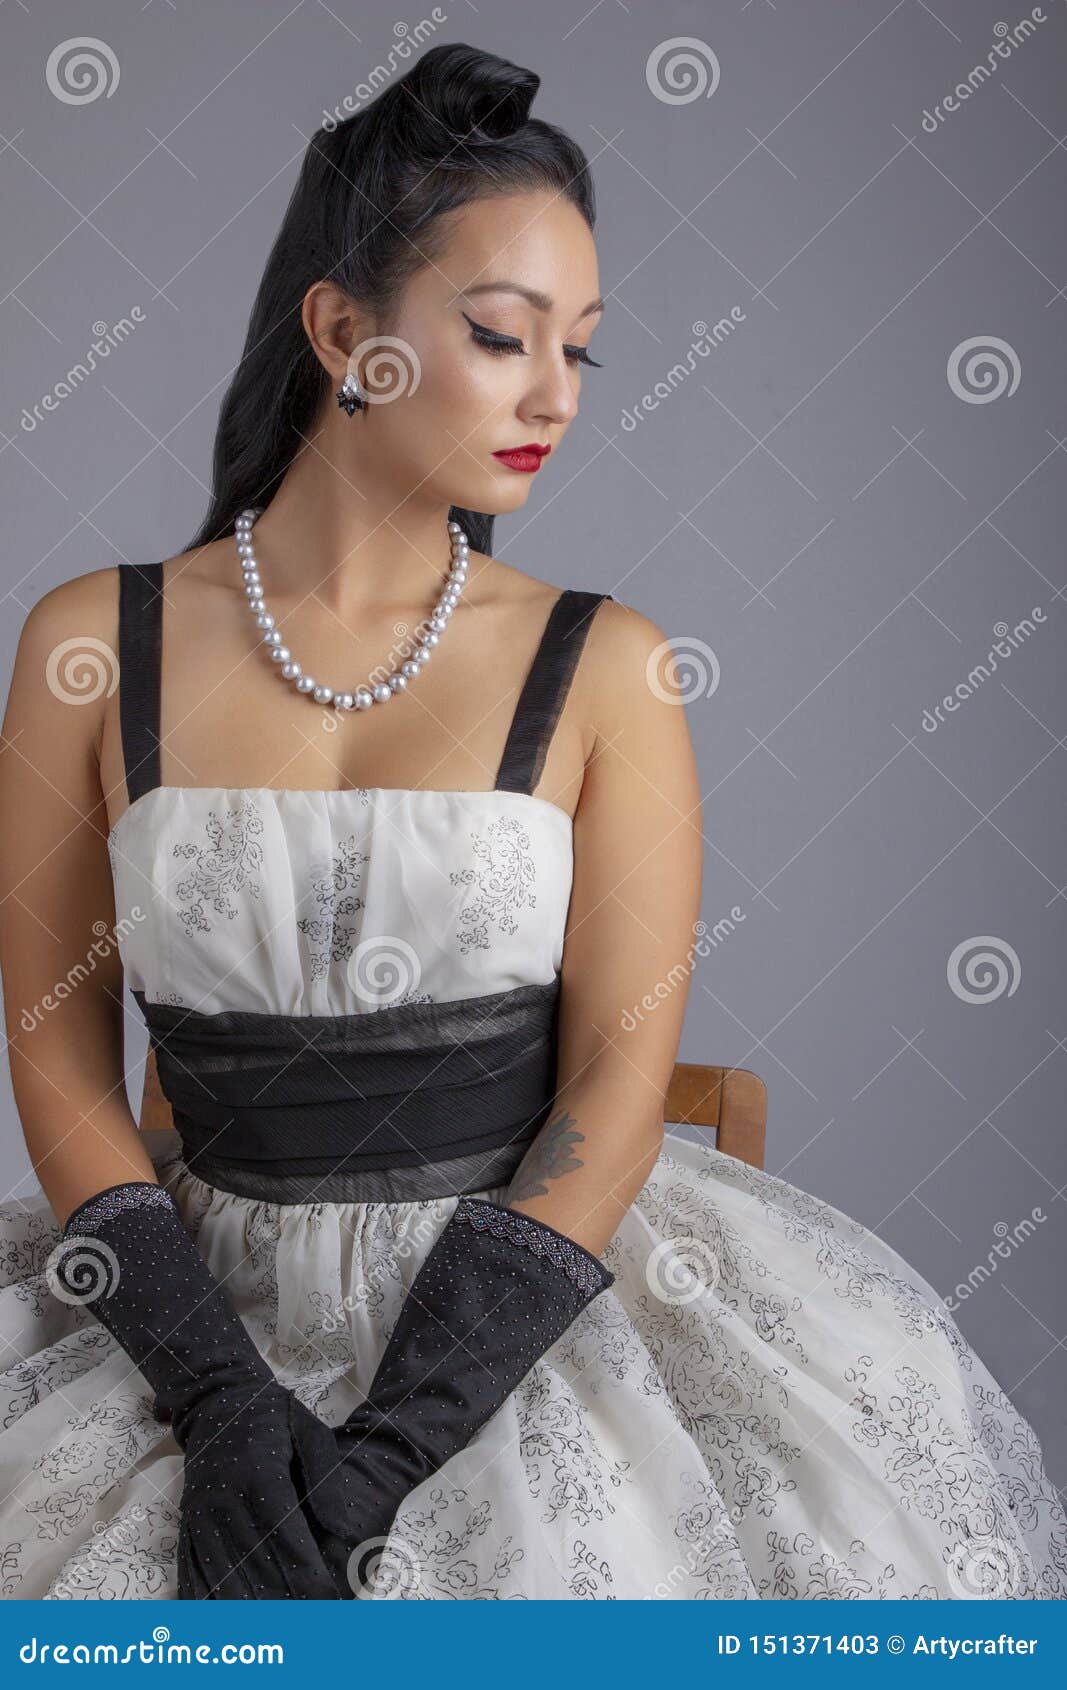 Mujer De Los Años 50 En El Vestido Blanco Y Negro Que Se Sienta En Una Silla Imagen de archivo - Imagen de aguja, contexto: